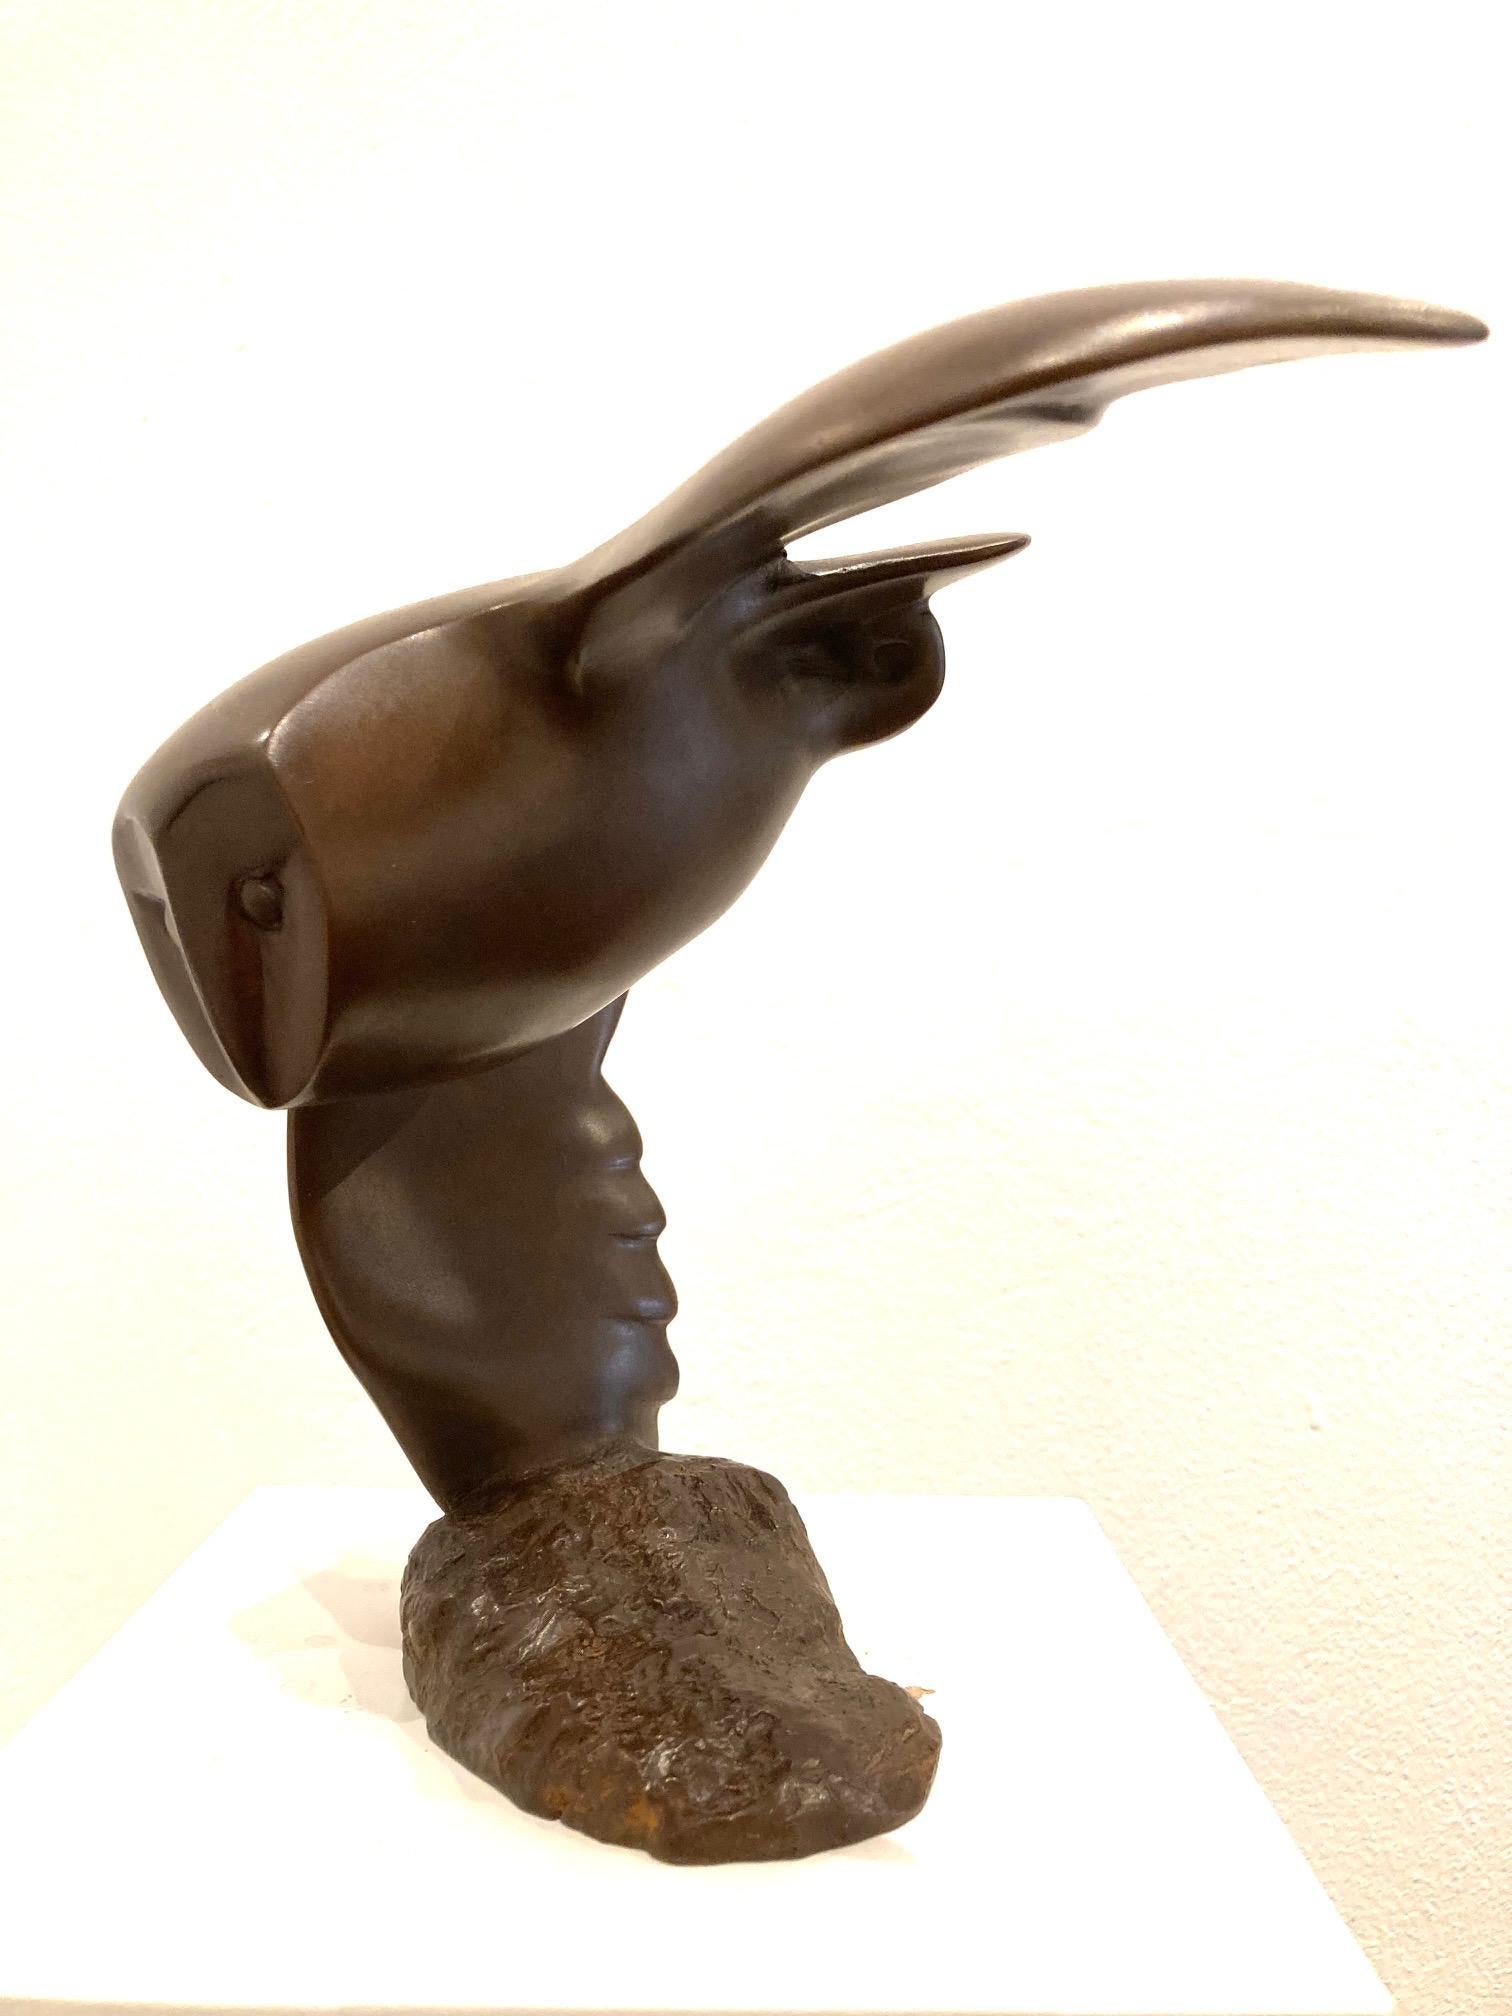 Evert den Hartog Figurative Sculpture - Vliegend Uiltje Bronze Sculpture Small Flying Owl Bird Animal In Stock 